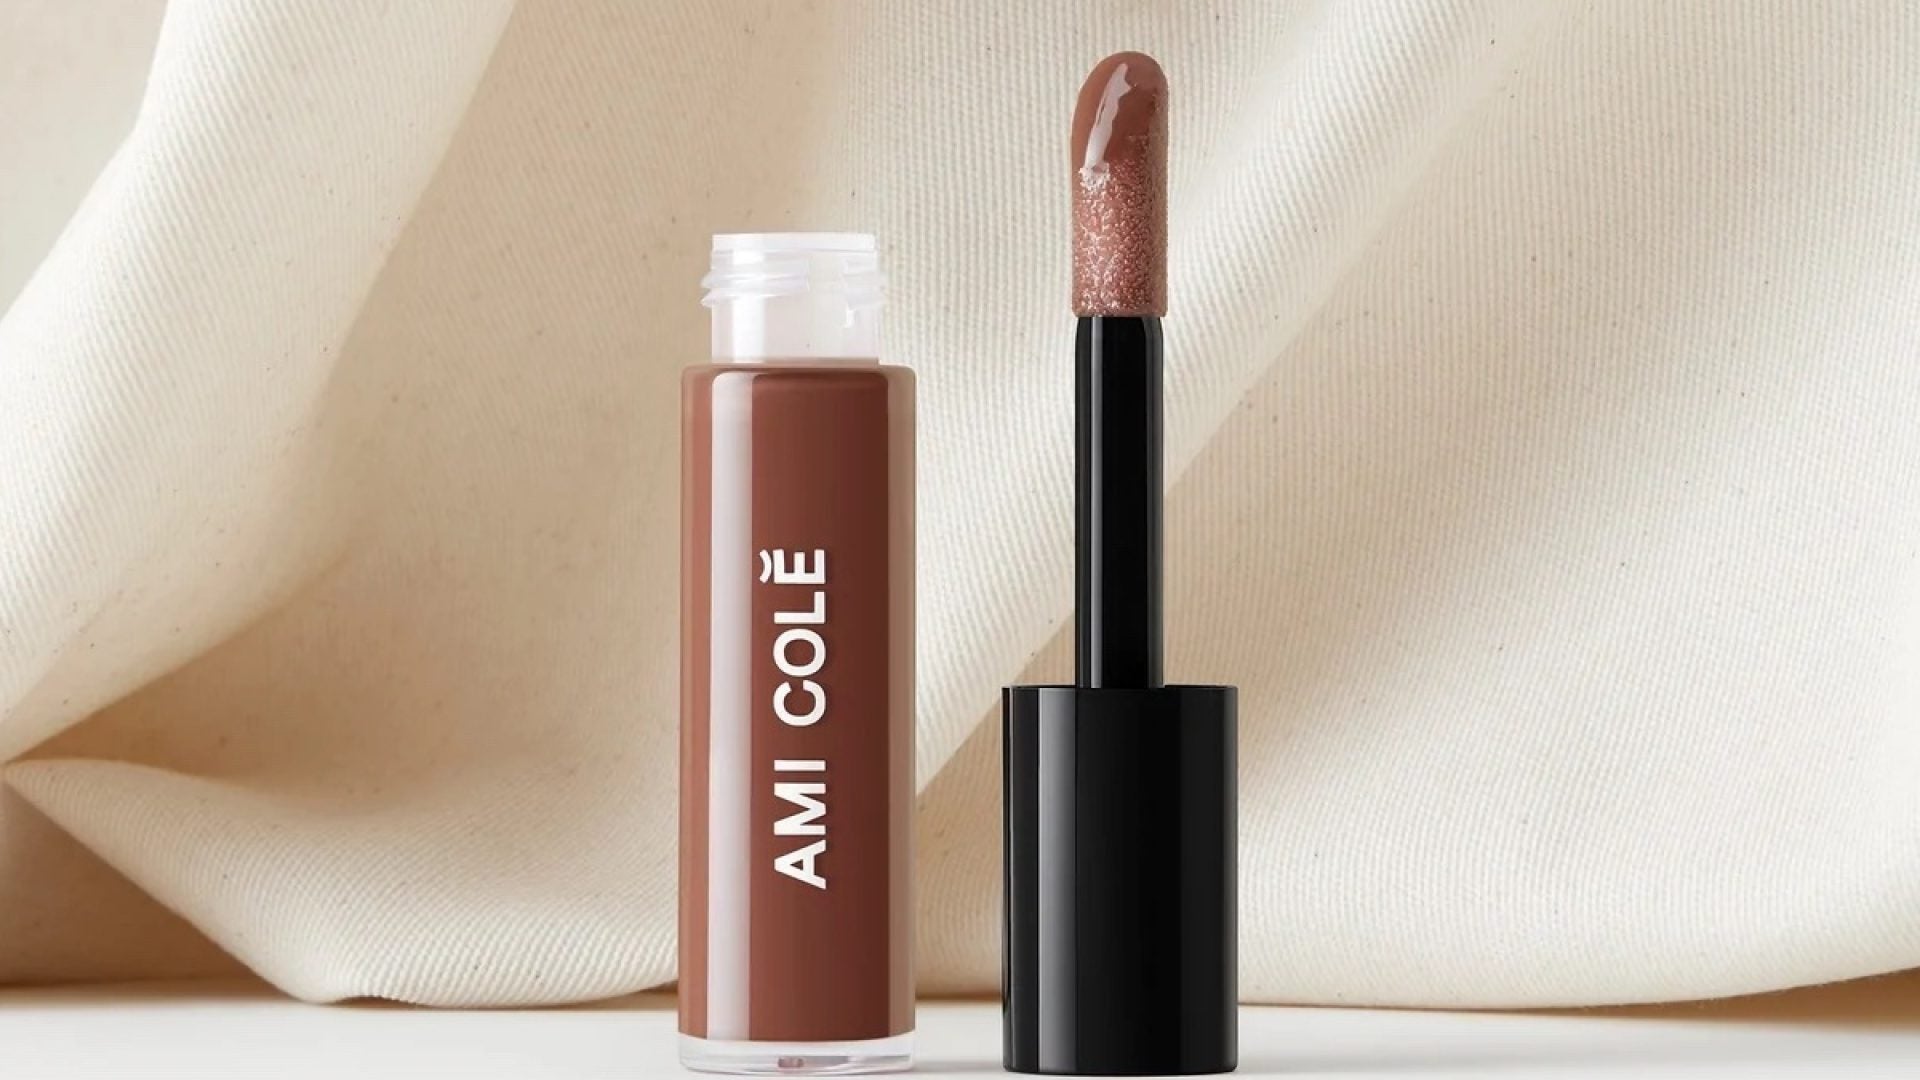 Online Makeup Line Ami Colé Heads To Sephora Shelves